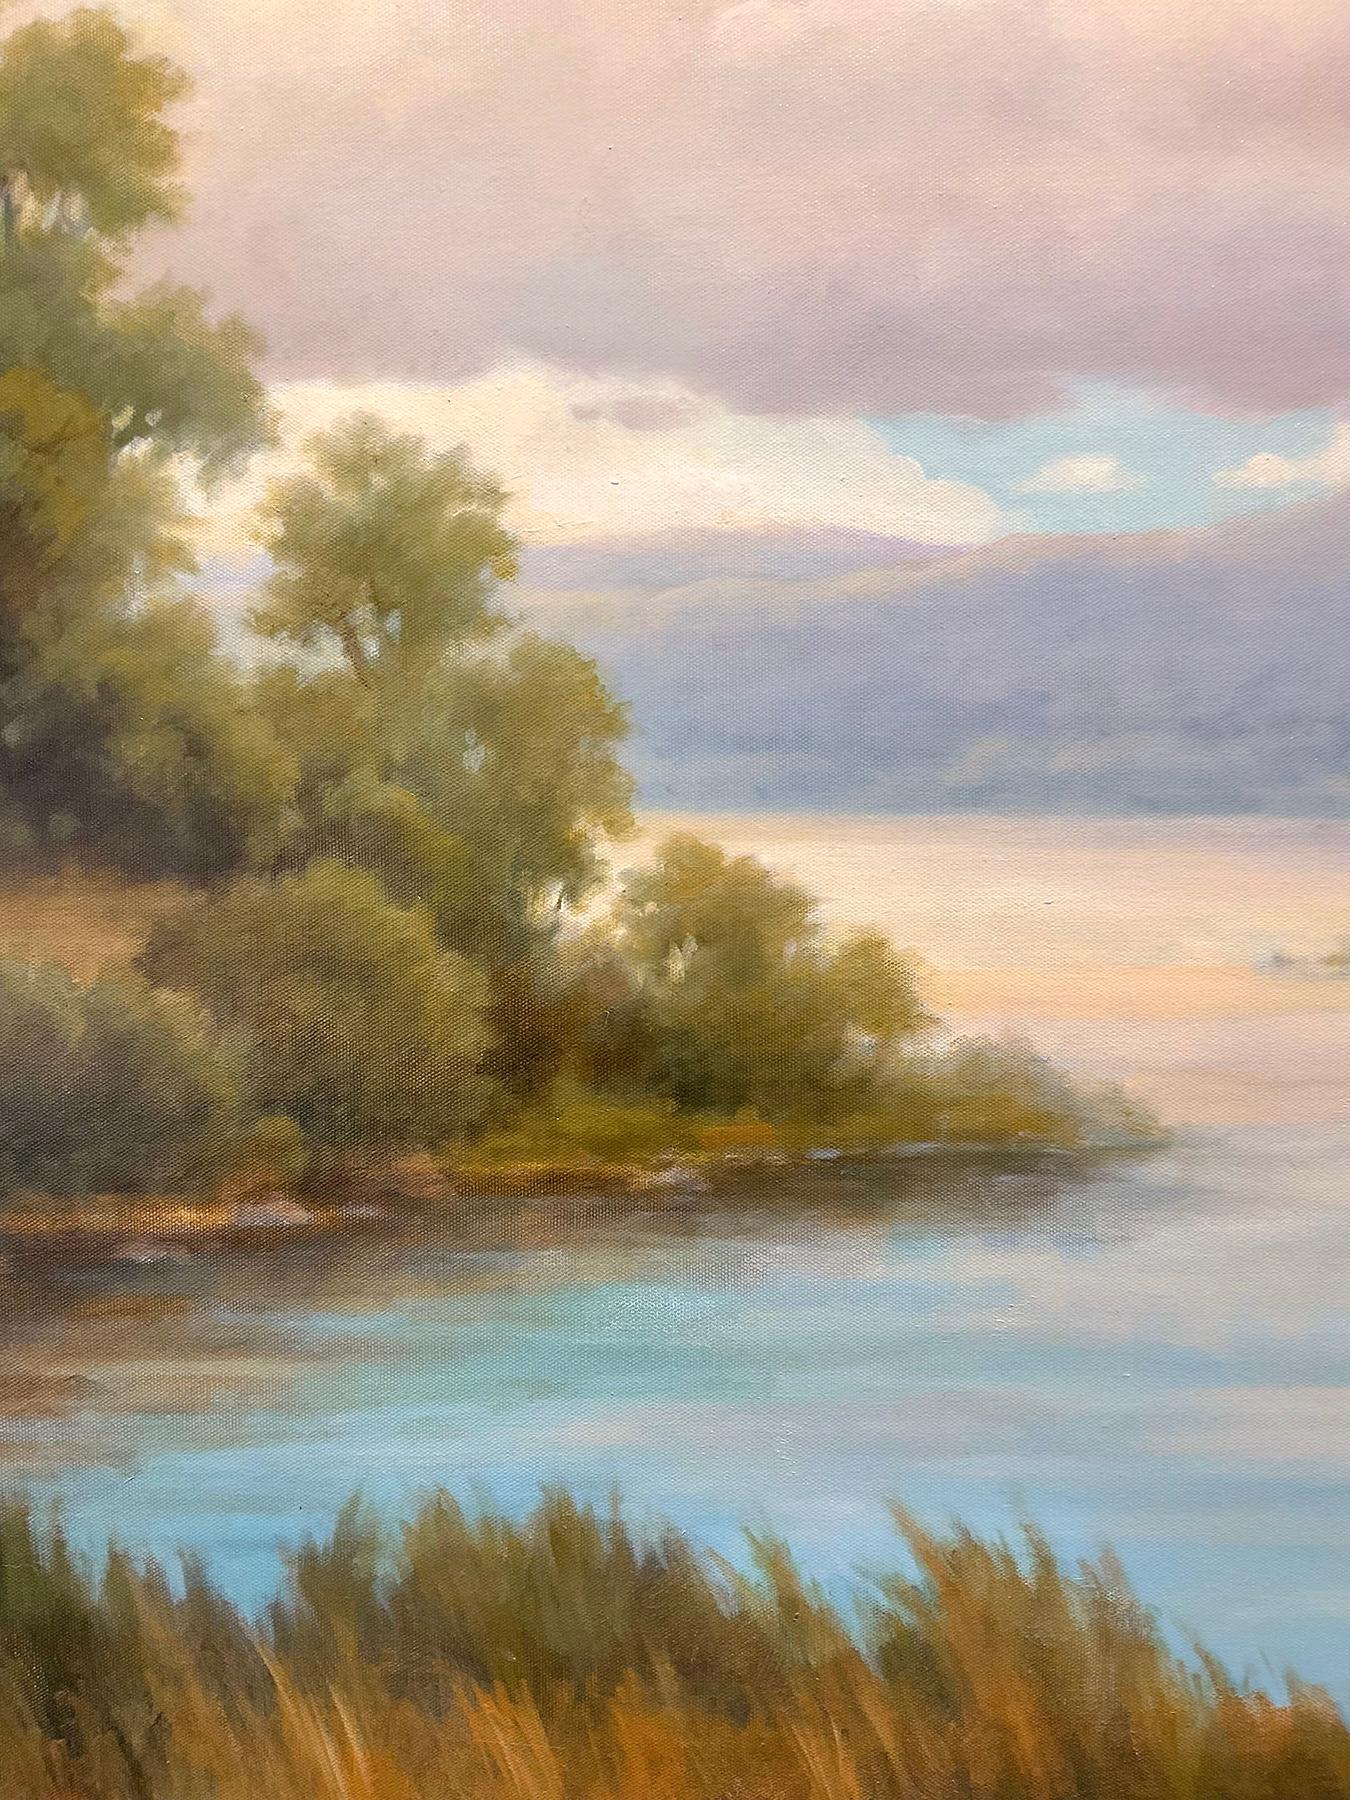 Modern Luminist, Hudson River School peinture de paysage sur toile d'un ruisseau et d'une rivière se rencontrant au détour d'une forêt avec des montagnes au loin.
